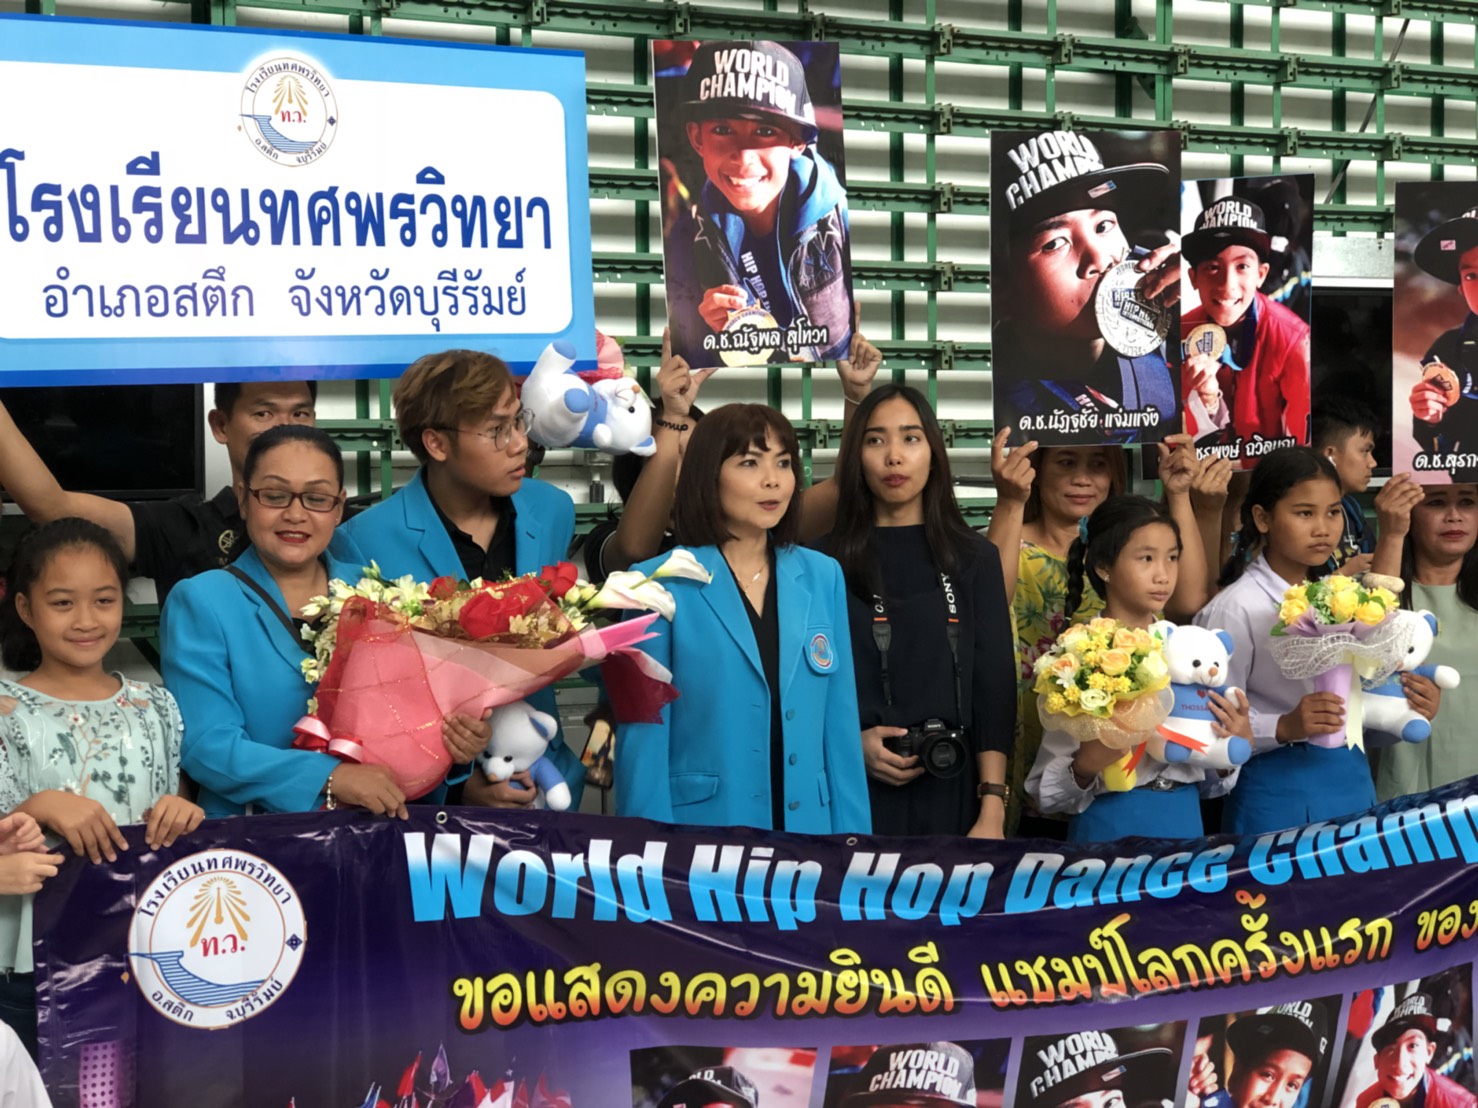 HHI THAILAND: ชัยชนะที่ยิ่งใหญ่ เปิดใจ 5 หนูน้อยบุรีรัมย์คว้าแชมป์โลกเต้น Hip Hop กลับเมืองไทย